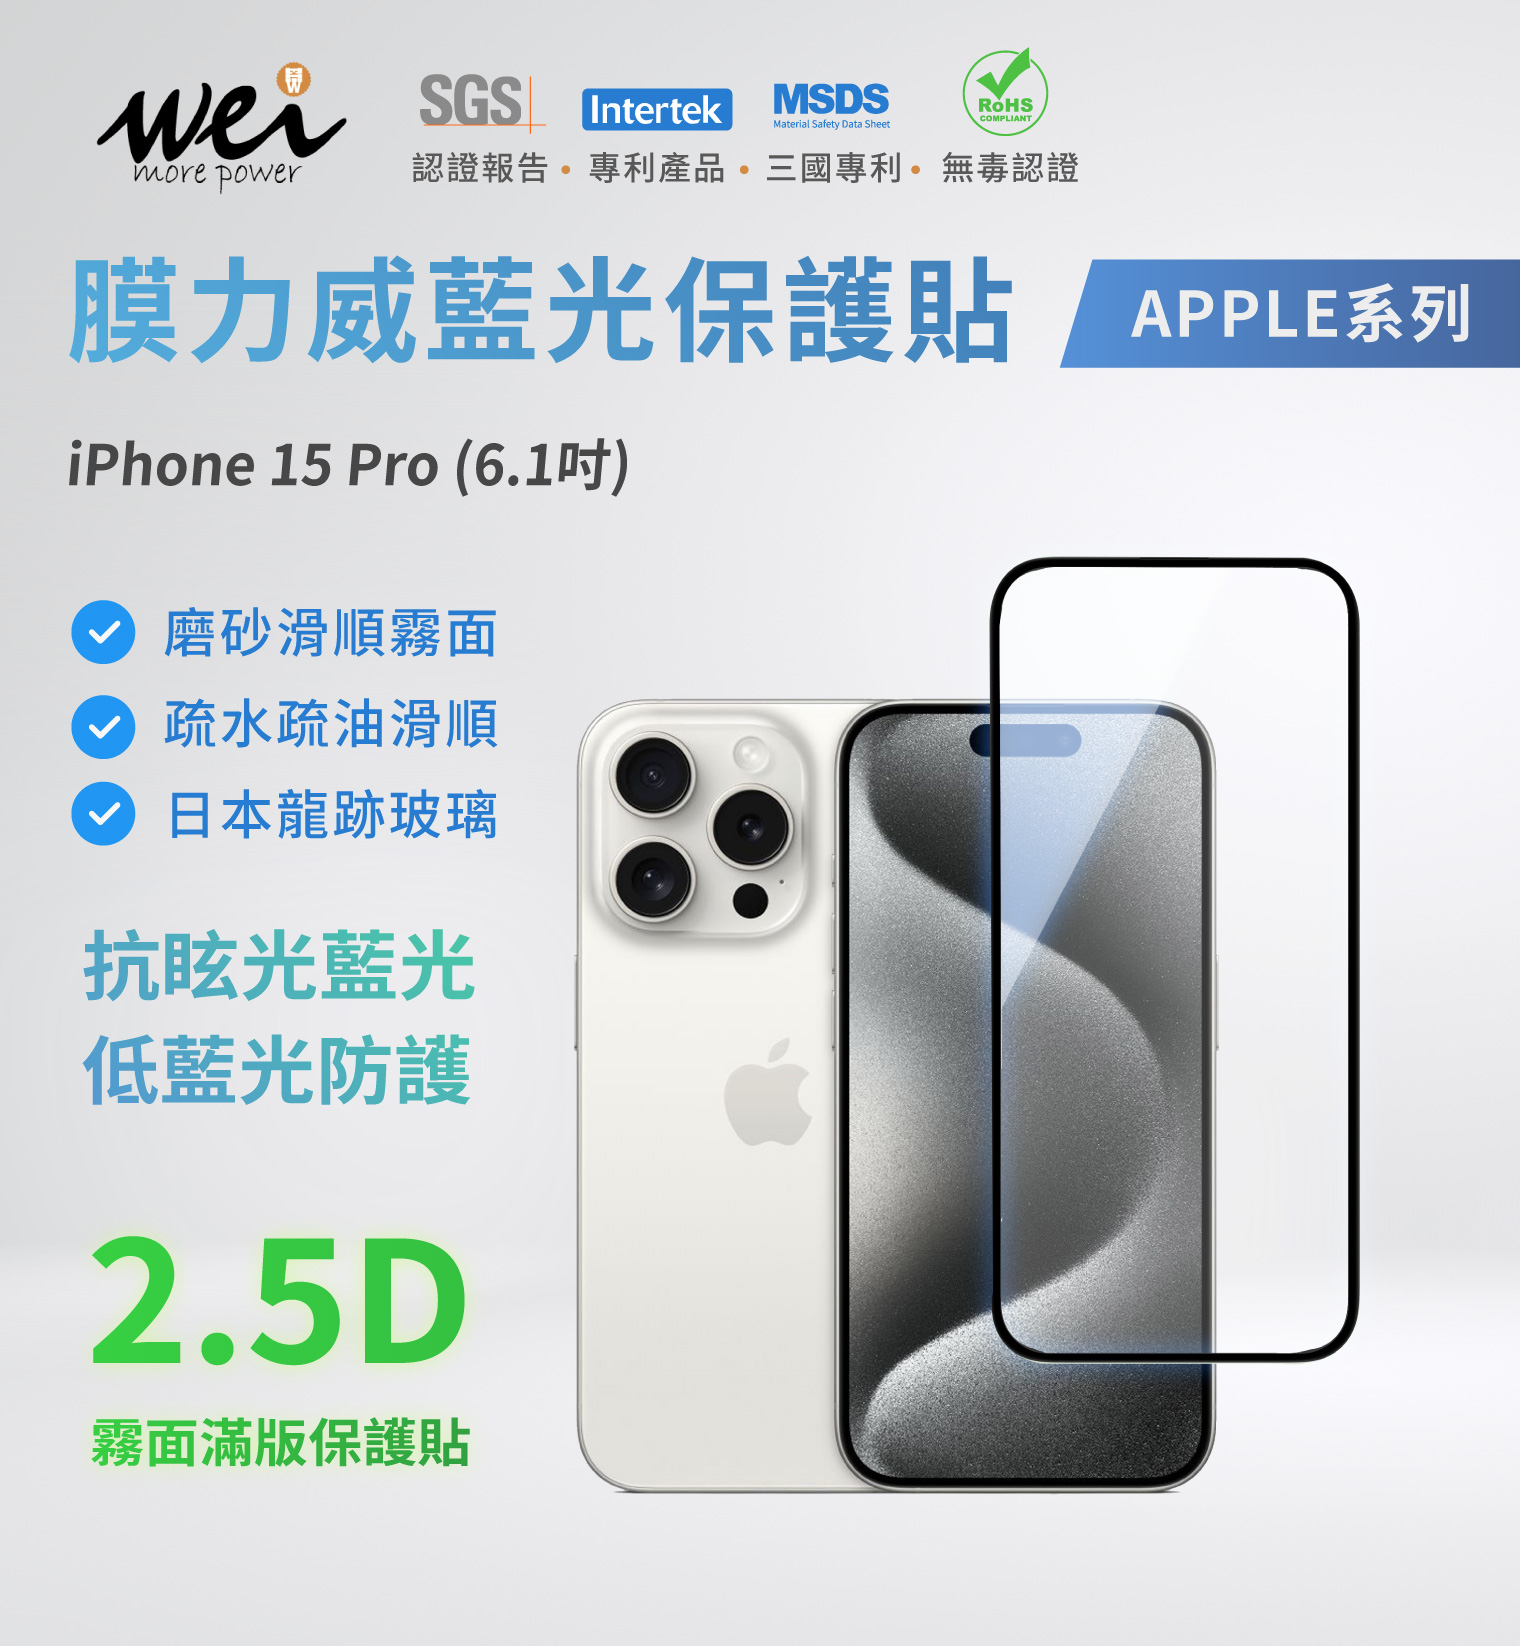 膜力威 iPhone 15 Pro 專利抗藍光2.5D霧面玻璃保護貼